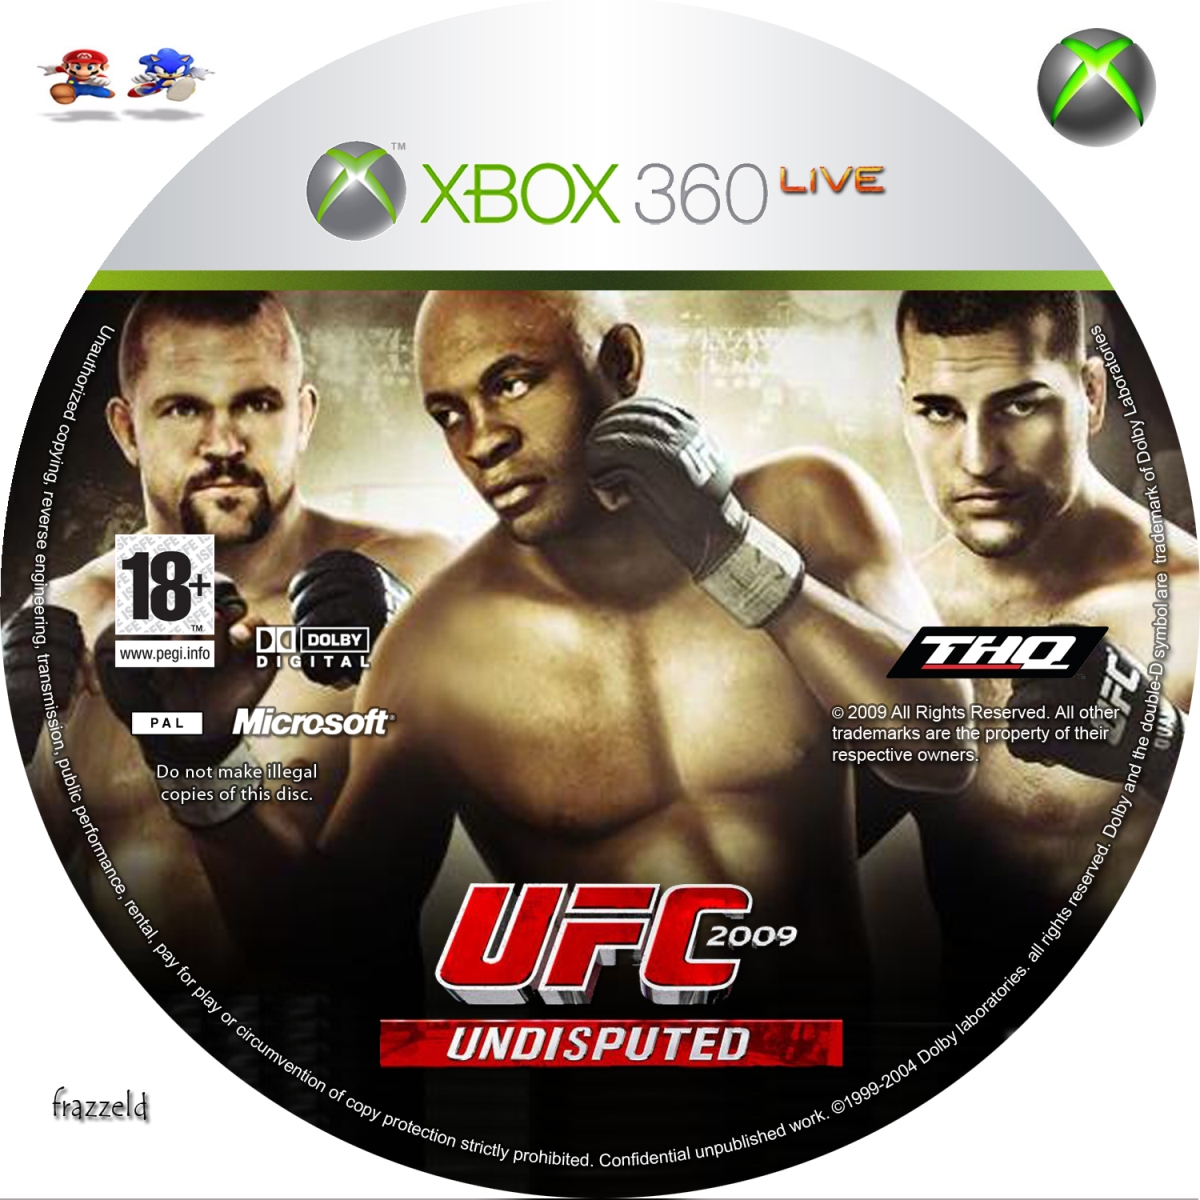 Игры на икс бокс 360 прошивка. UFC 2009 Undisputed Xbox 360. UFC 3 Undisputed Xbox 360 диск. Обложка УФС 3 Xbox 360. Диск для Xbox 360 UFC 2.